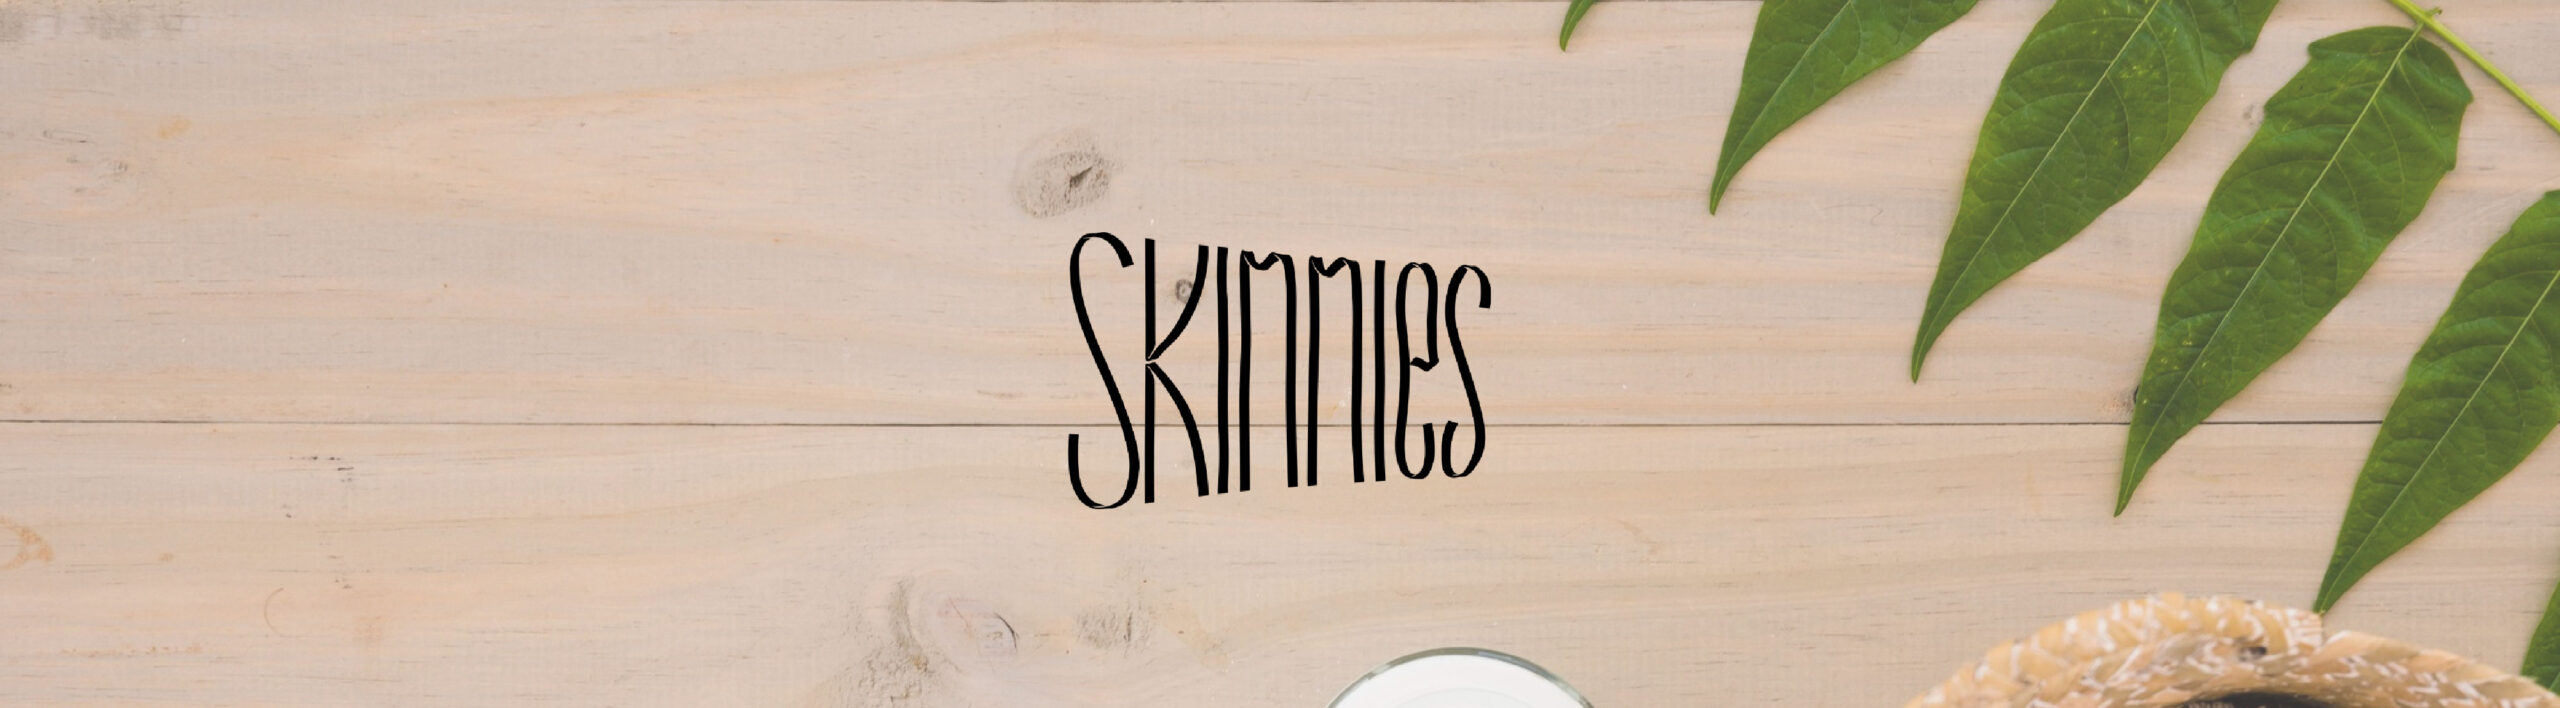 Banner promocional de la marca Skinnies con un fondo de madera natural y hojas verdes